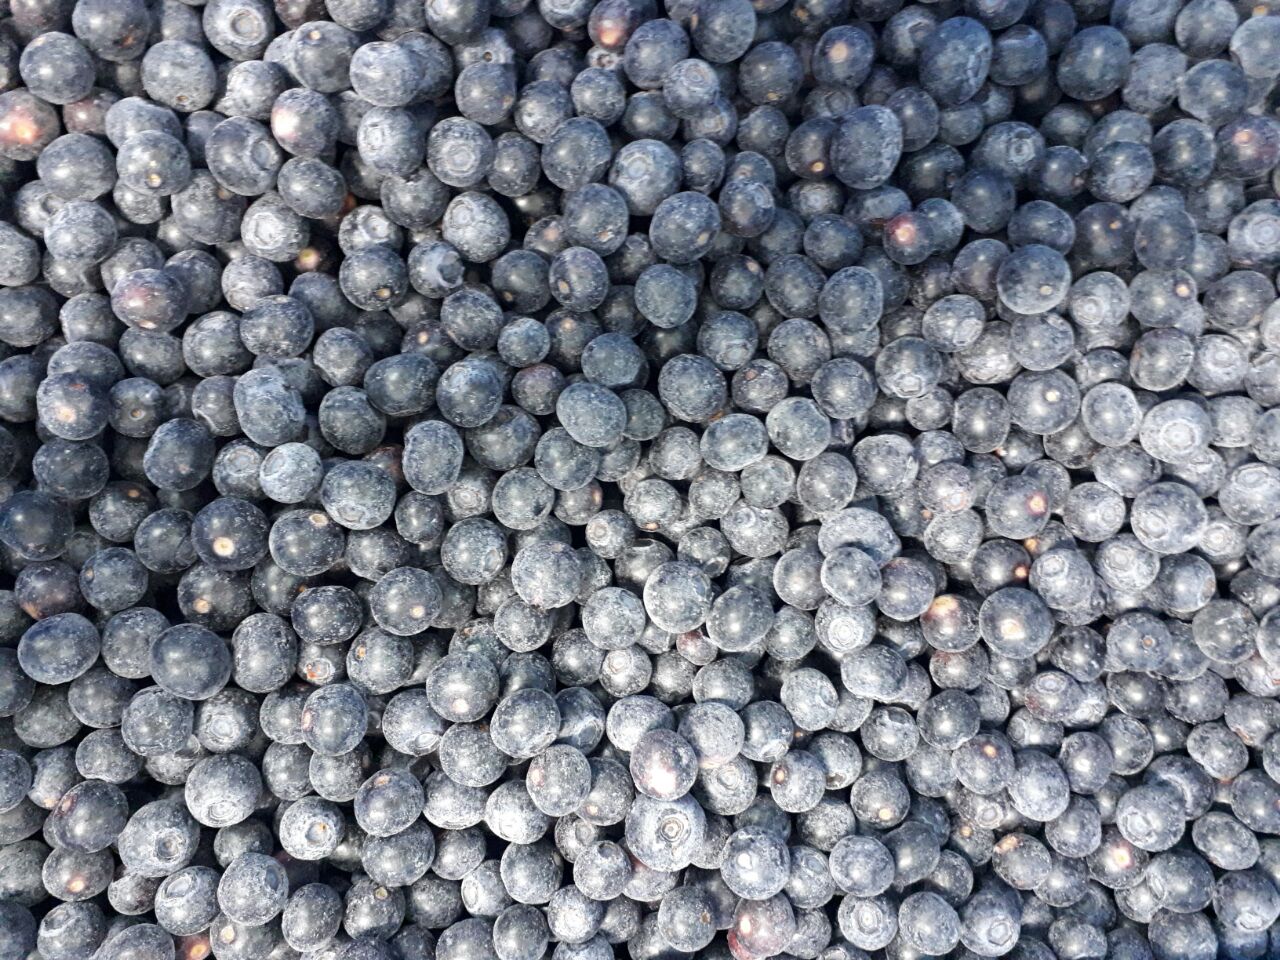 进口冷冻蓝莓供应商 厂家直供